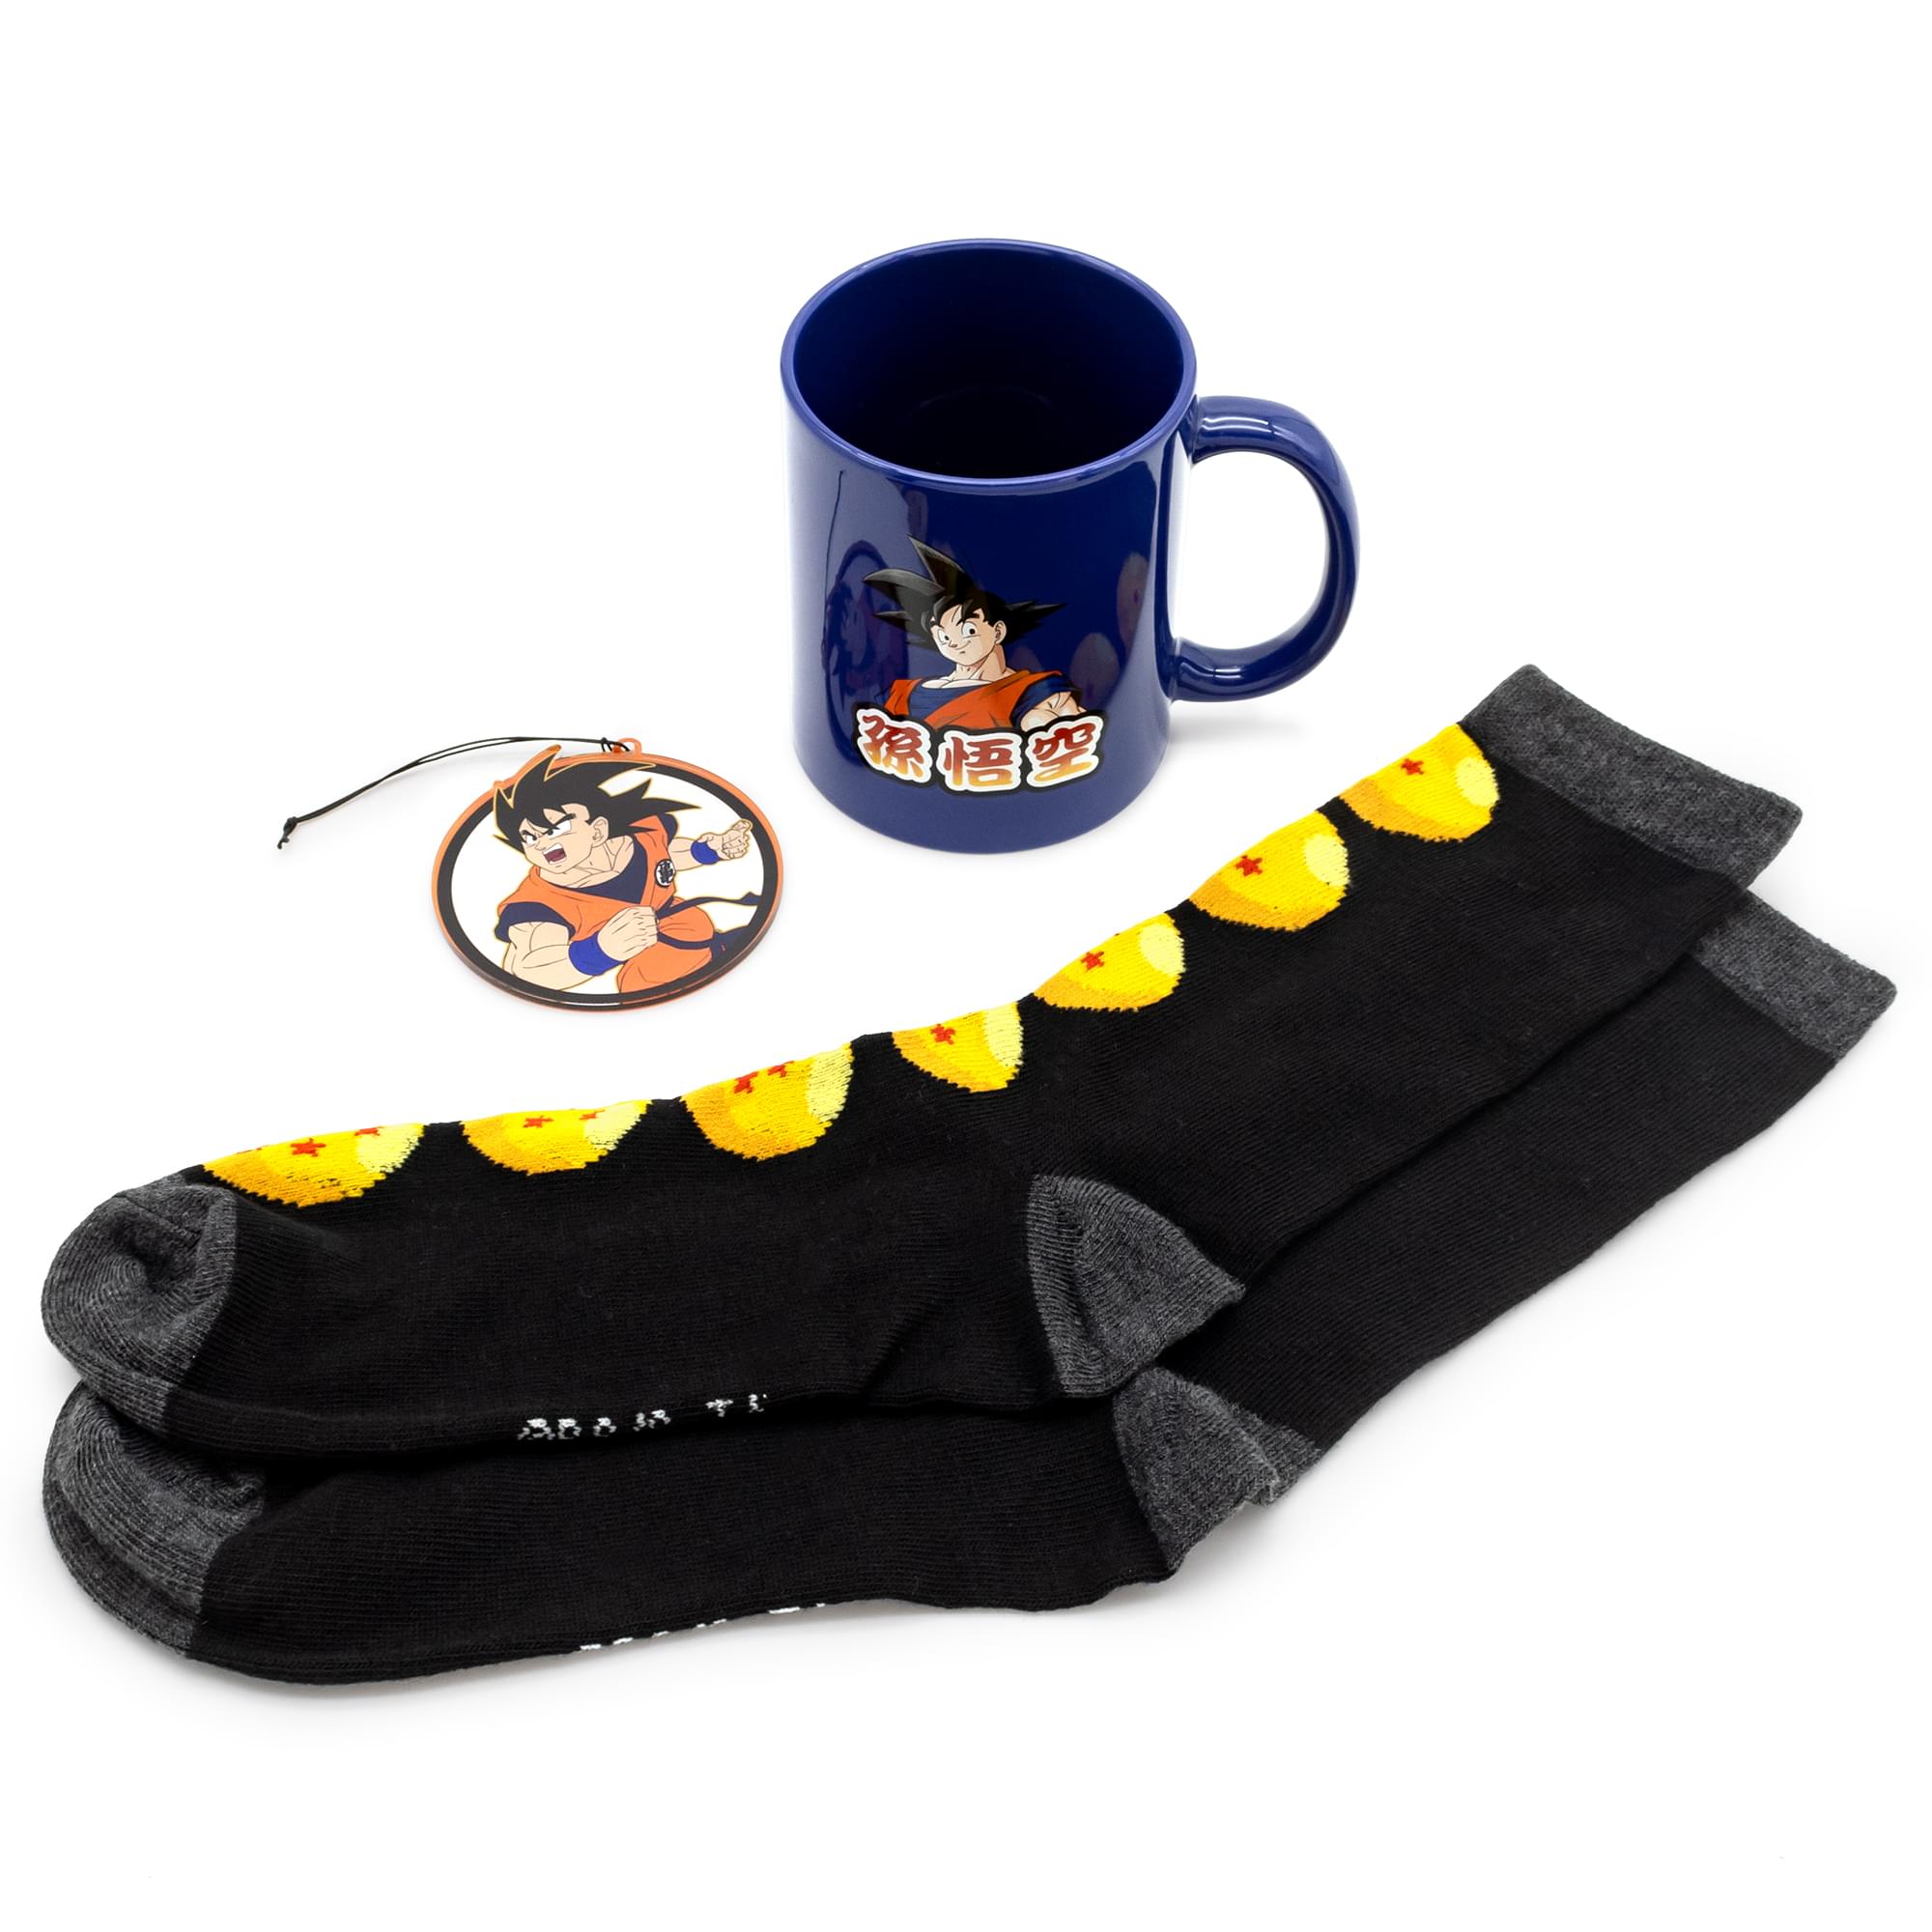 Dragon Ball Z Goku Mug, Socks, And Ornament Bundle